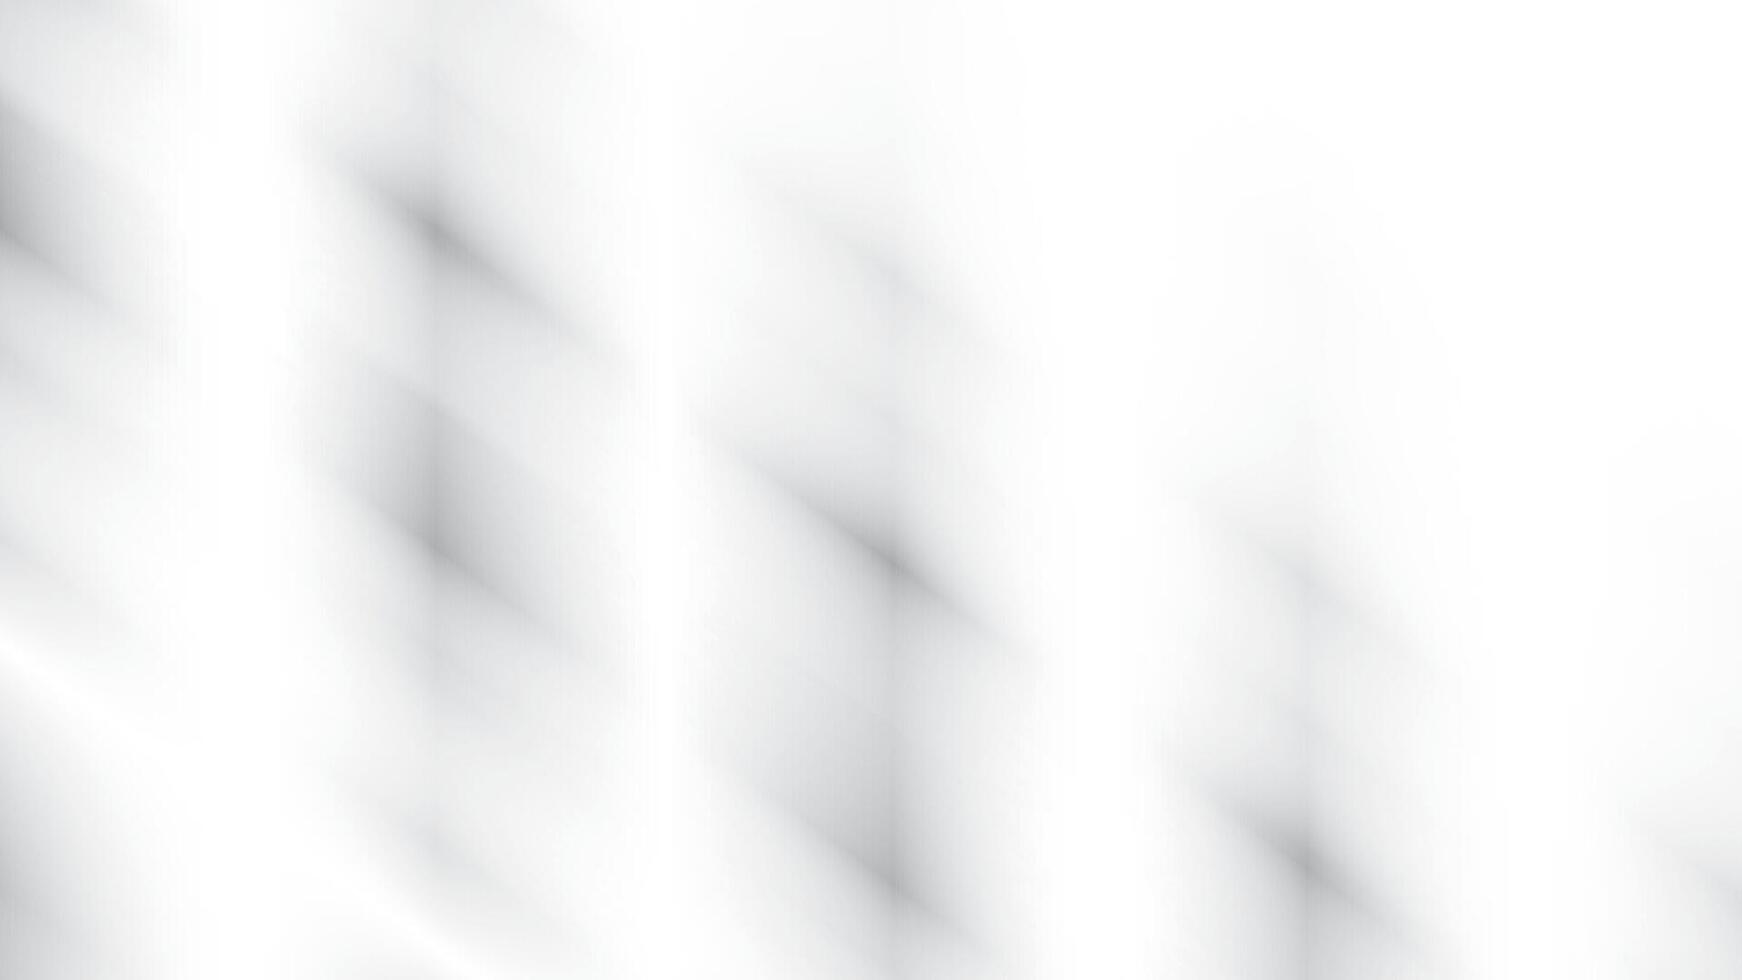 abstrakt vit och grå Färg lutning bakgrund. vektor illustration.